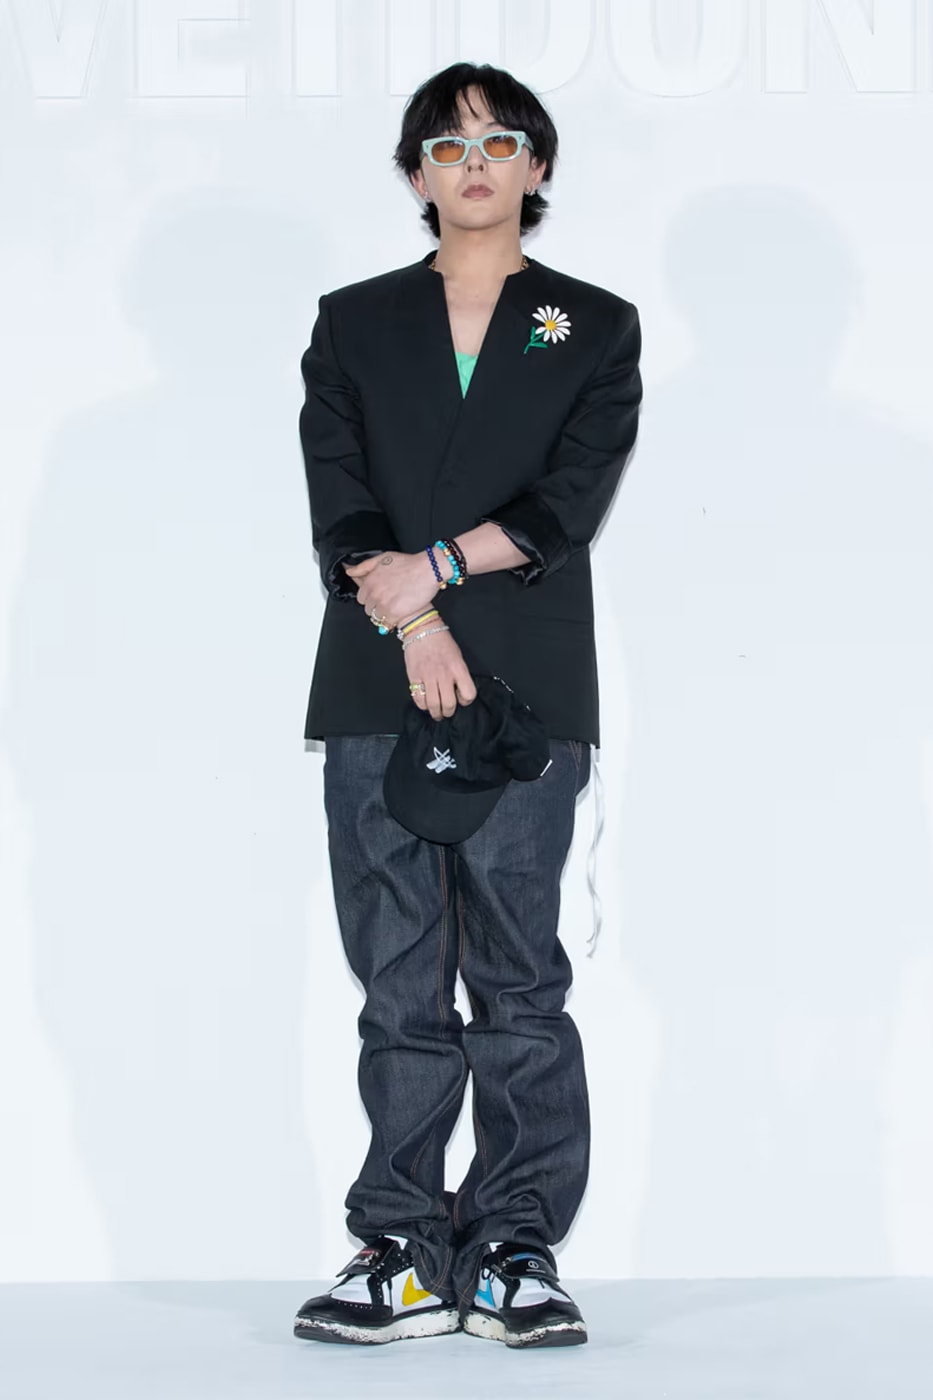 ジードラゴンがピースマイナスワン x ナイキ クウォンド 1の未発売モデルを着用 G-Dragon New PEACEMINUSONE Nike Kwondo 1 Colorway Info Big Bang